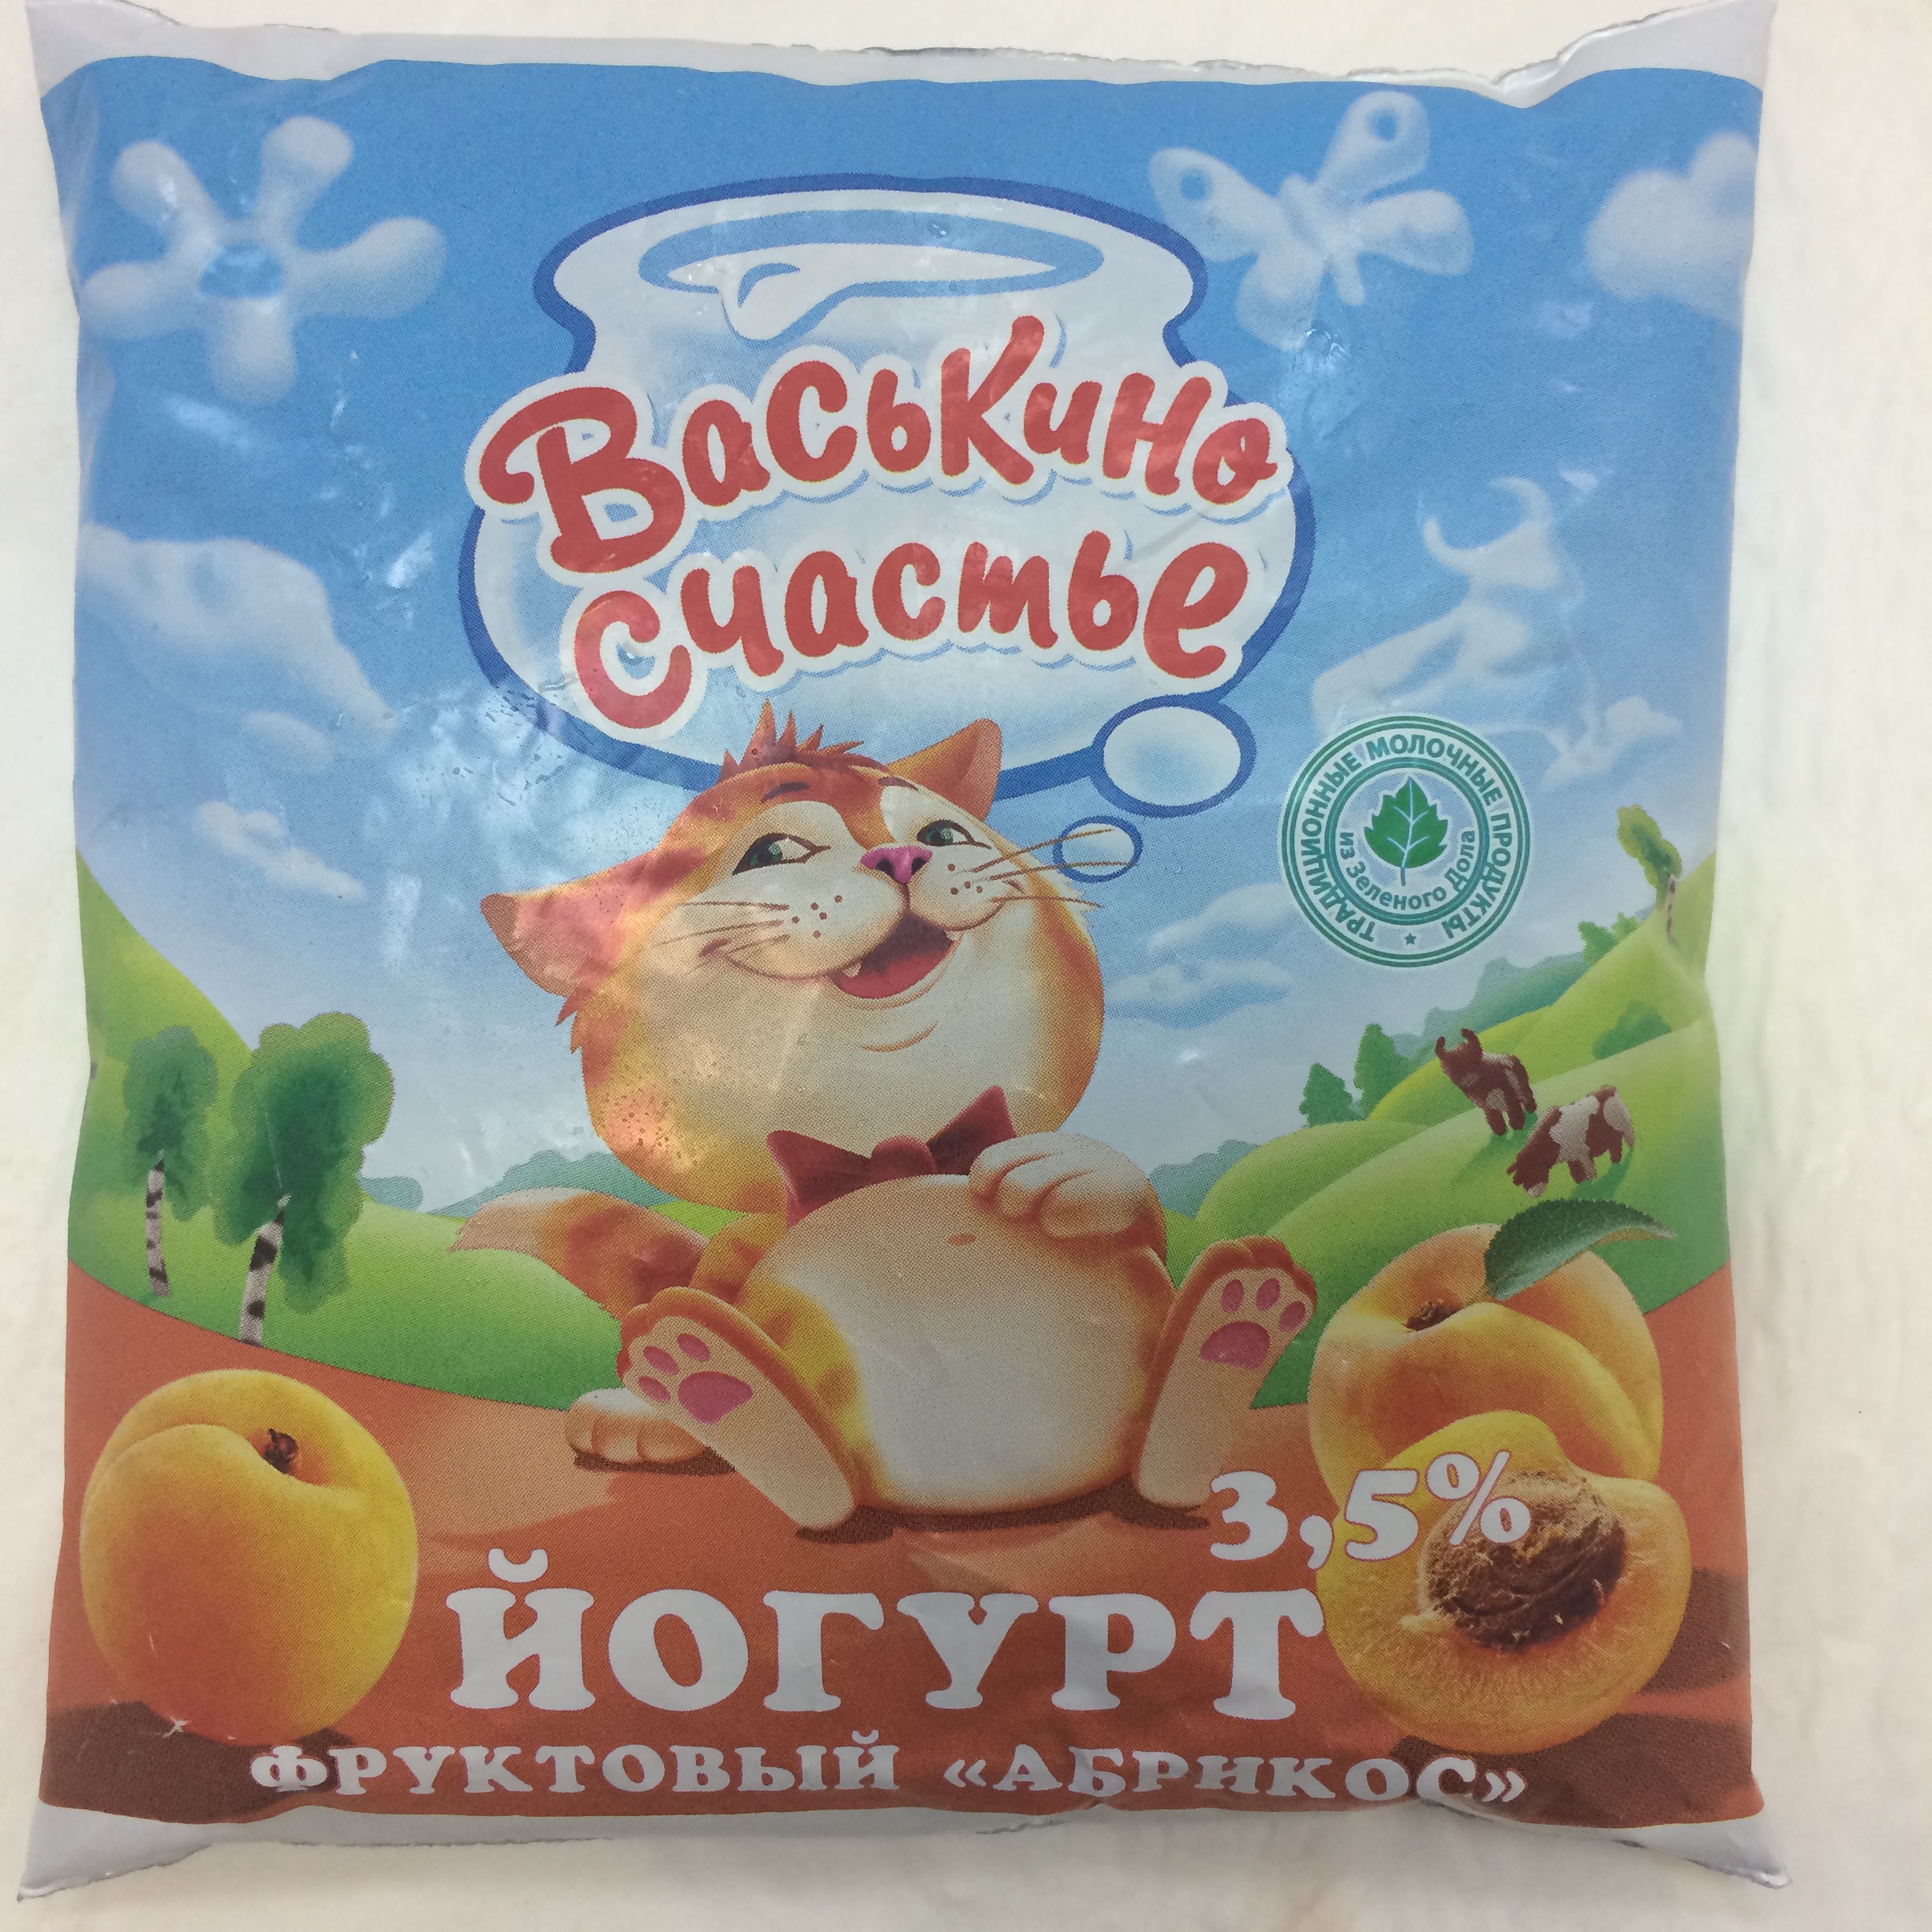 Йогурт фруктовый "Абрикос", ТМ "Васькино счастье", 3,5%